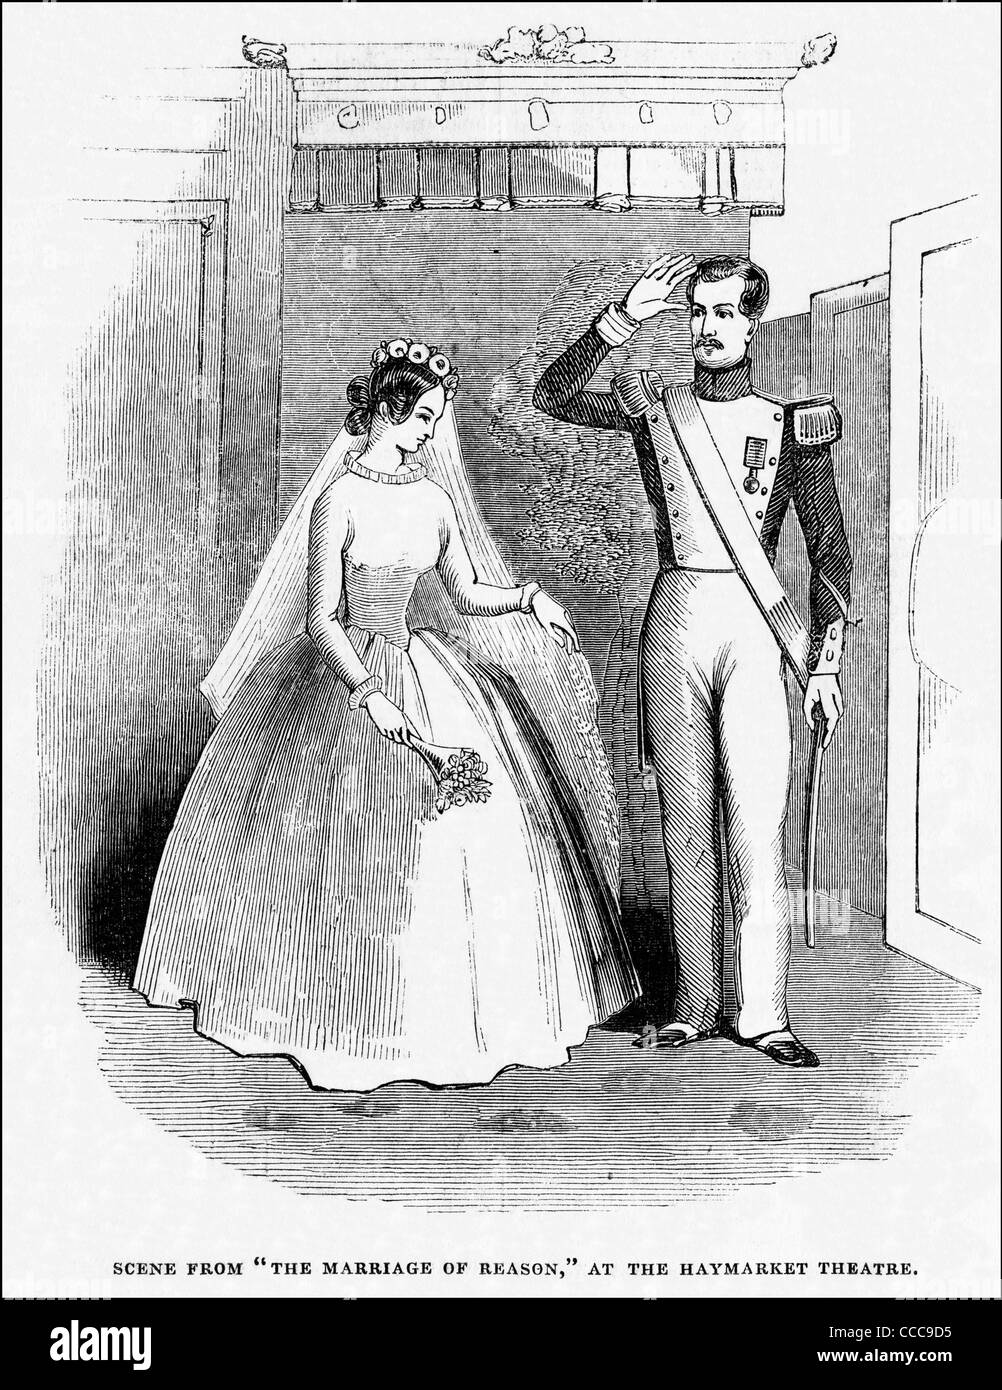 La gravure de l'époque victorienne circa 1844 scène du mariage de raison à l'Haymarket Theatre London England UK Banque D'Images